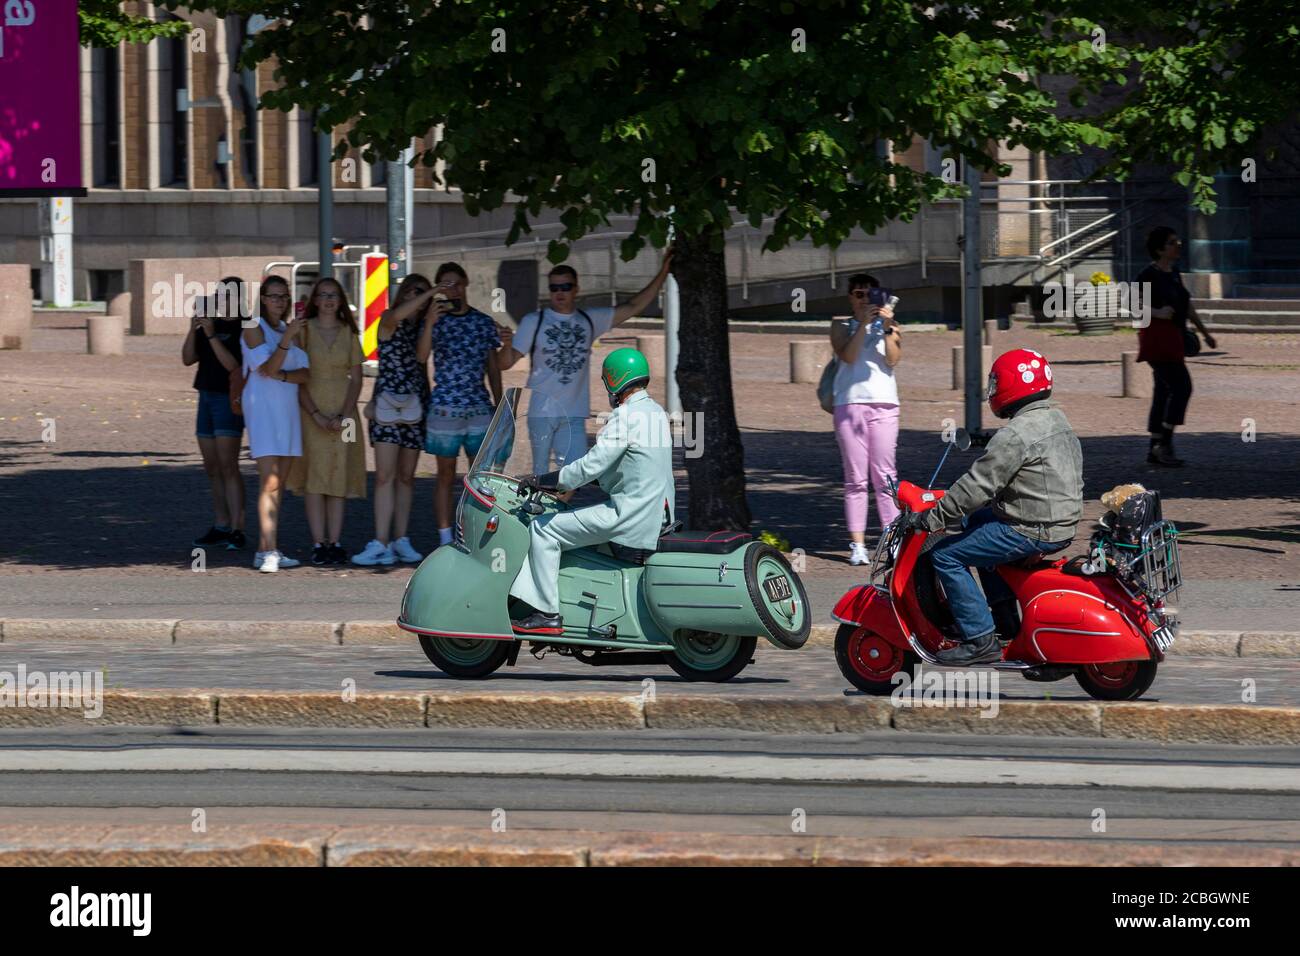 Une parade de scooter a eu lieu lors d'une journée nationale de tir à Helsinki, en Finlande. Des véhicules d'époque ont traversé les rues principales du centre-ville de la capitale finlandaise. Banque D'Images